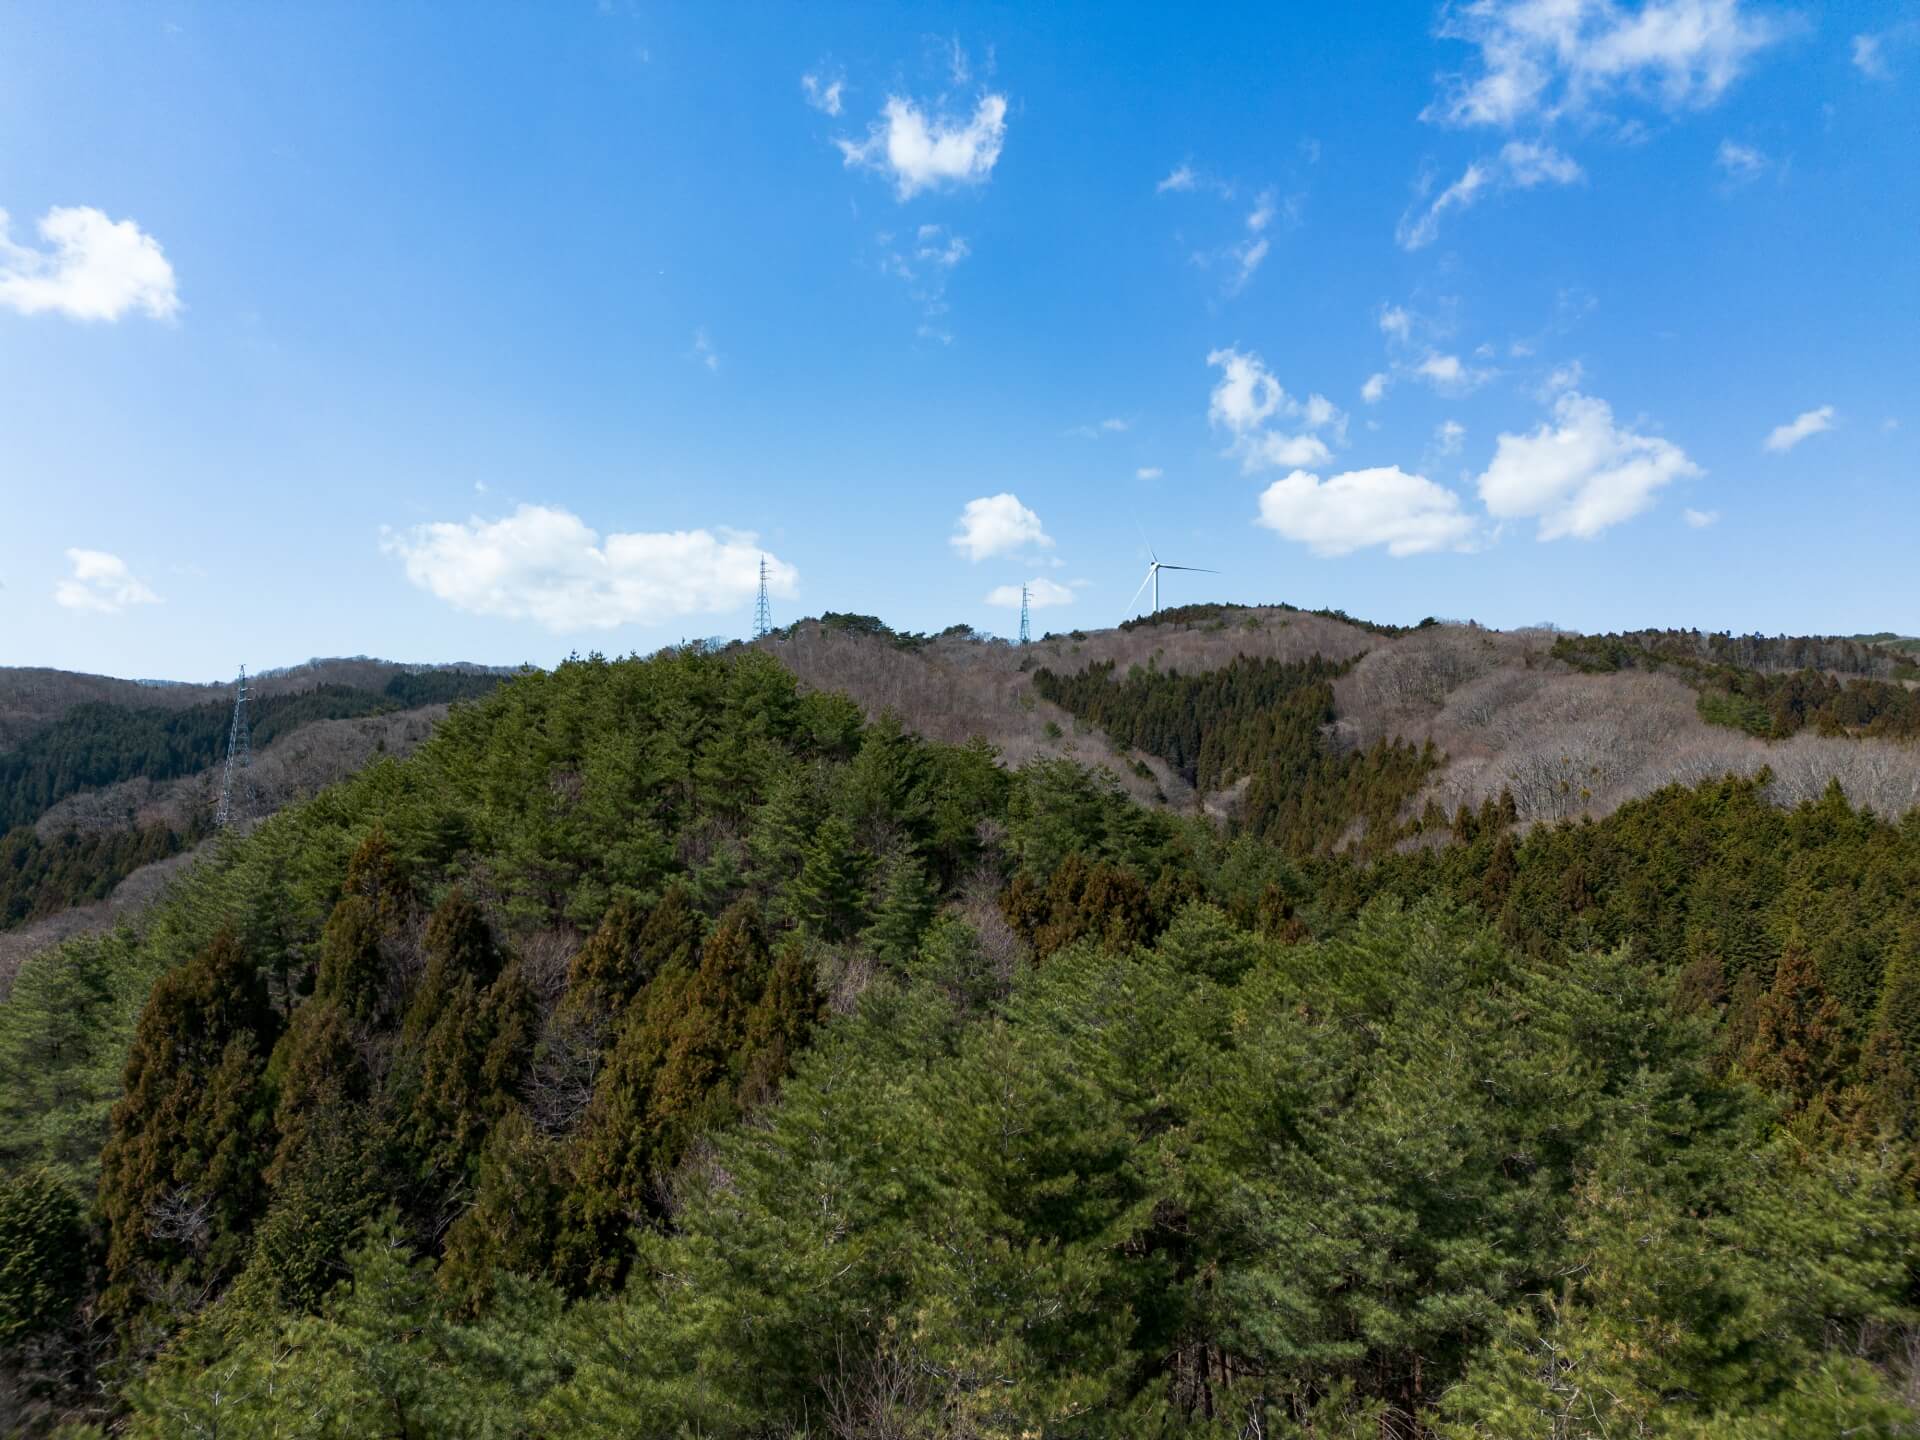 田人ウインドファームの風車（田人町旅人根室の国有林上空からドローンで撮影）